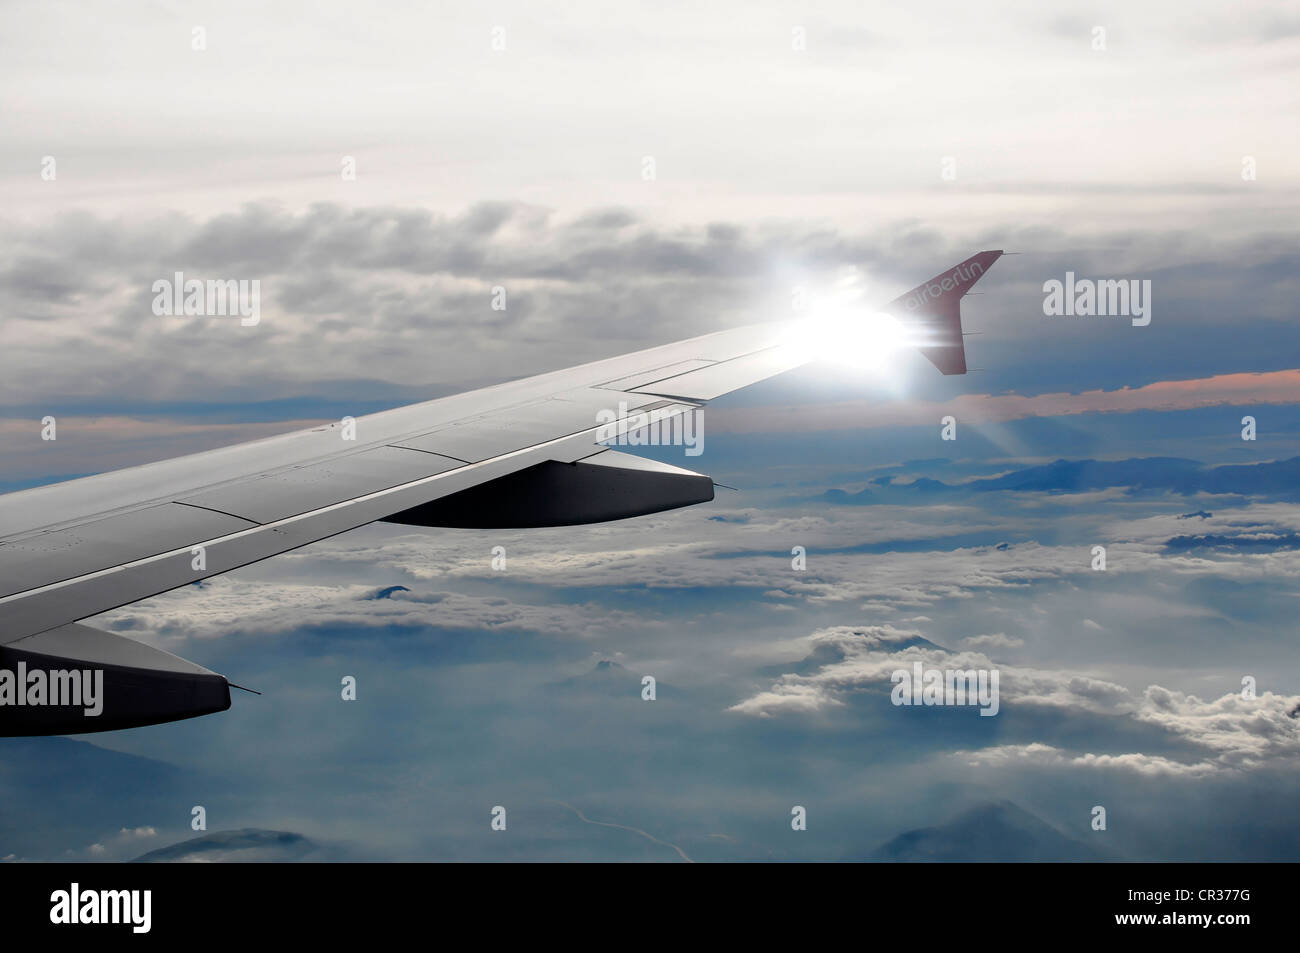 Ala destra, Airbus A 319 in volo sopra le nuvole Foto Stock